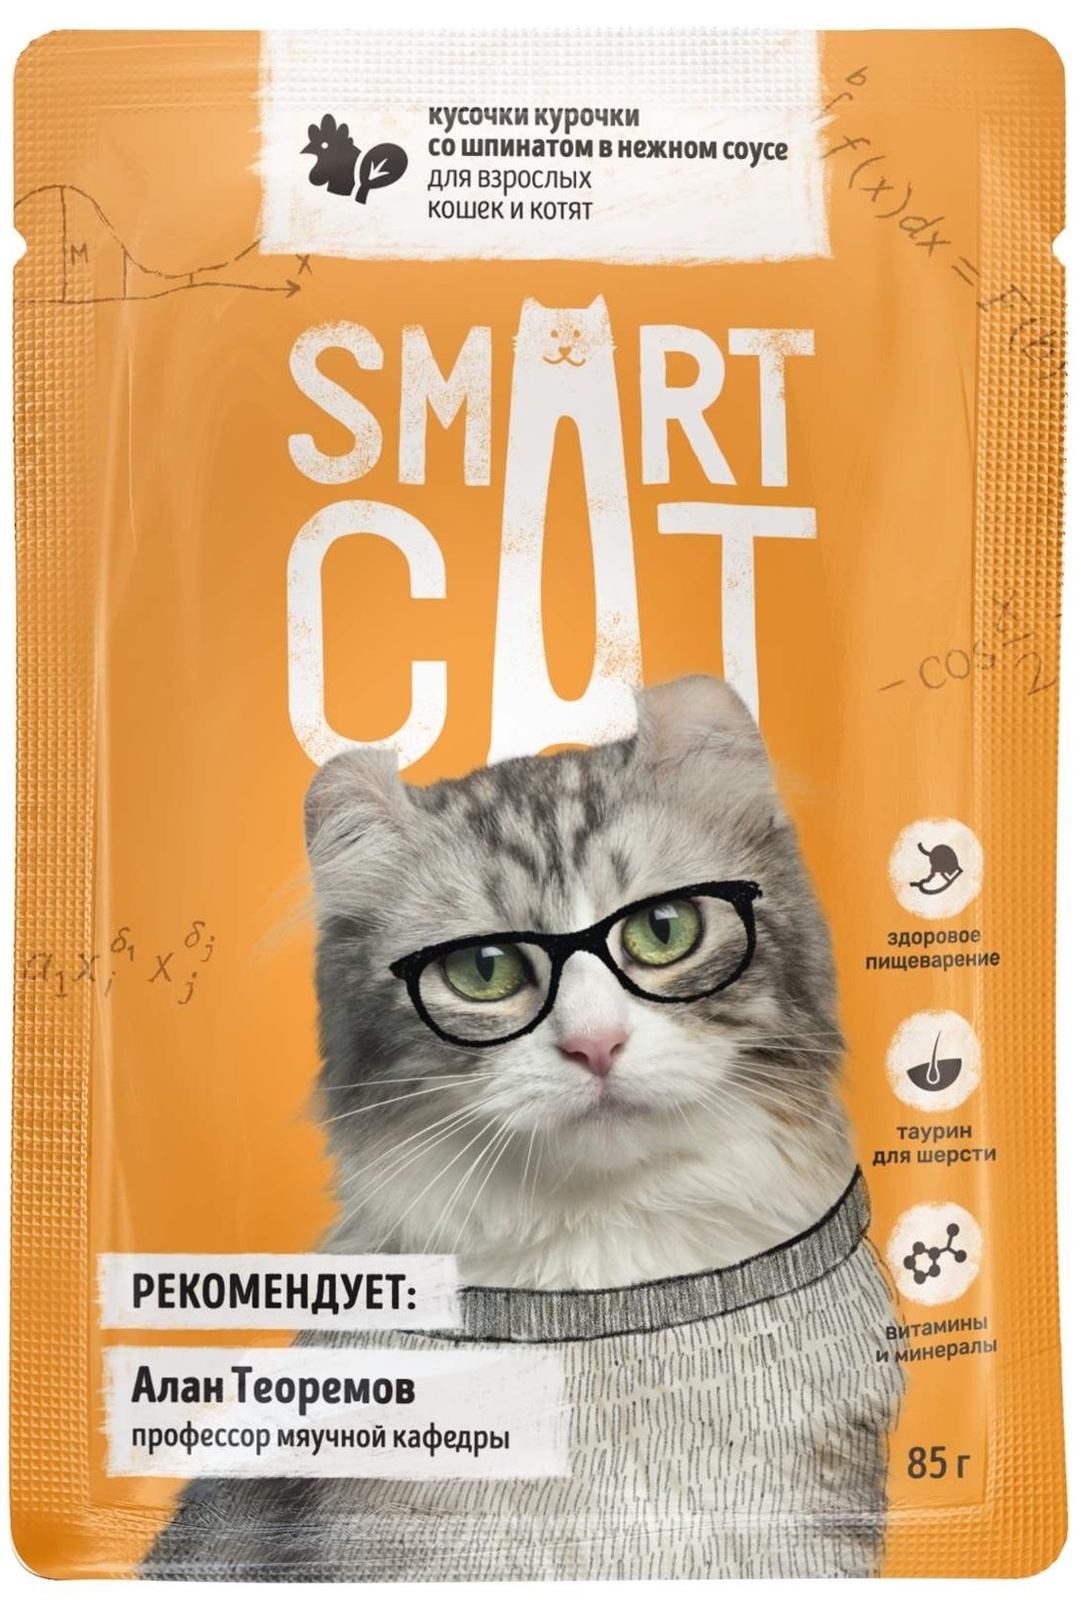 Smart Cat Smart Cat паучи для взрослых кошек и котят: кусочки курочки со шпинатом в нежном соусе (85 г)